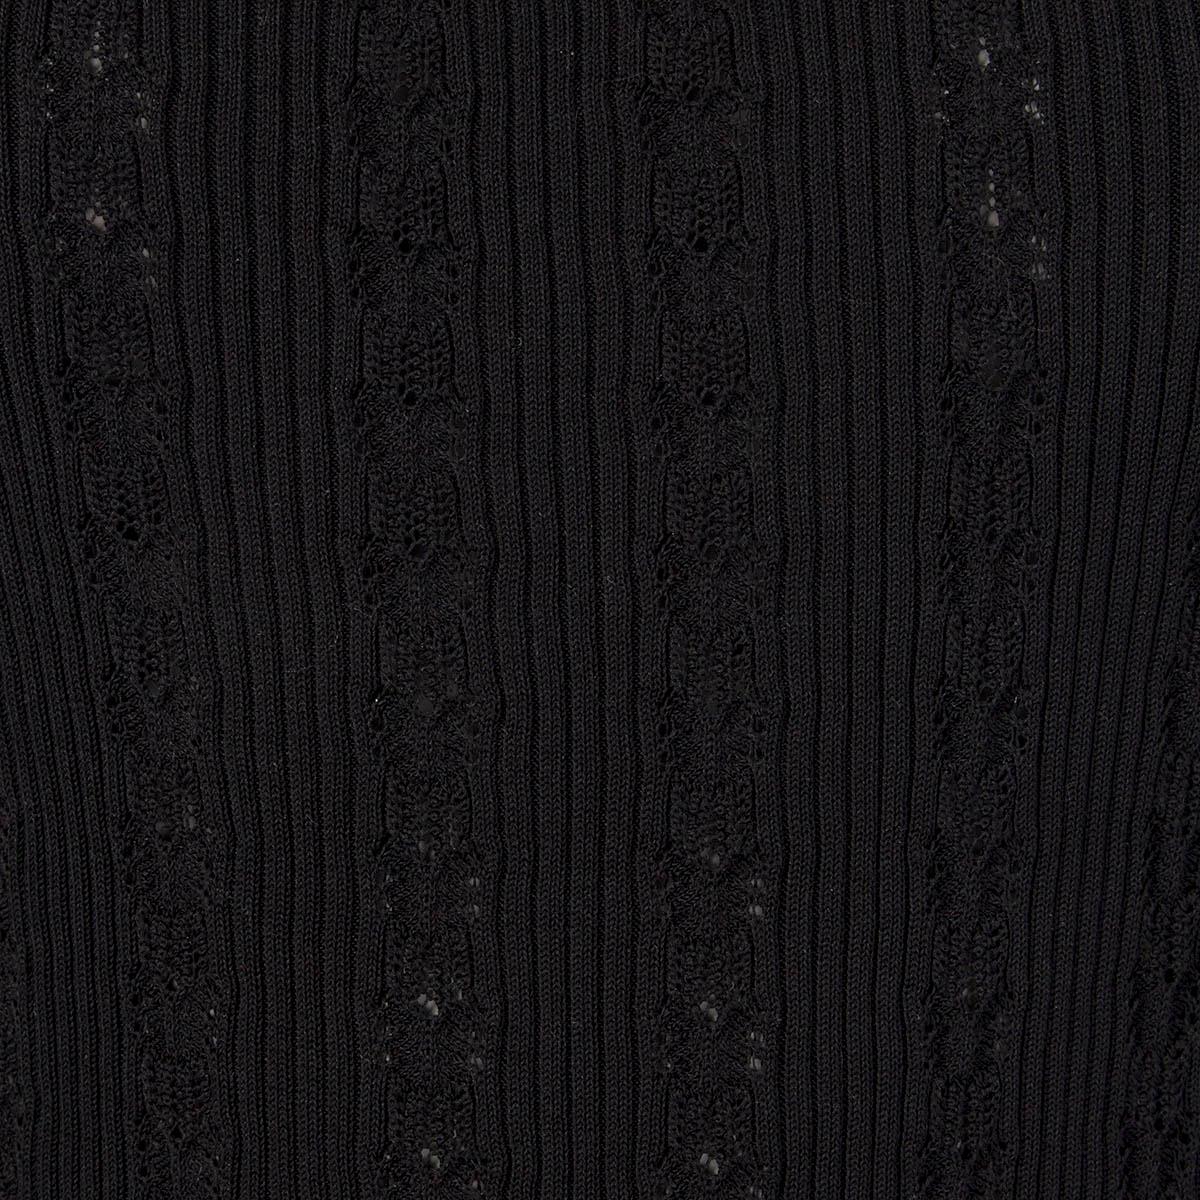 Black CHANEL black cotton RIB KNIT POINTELLE Tank Top Shirt 38 S